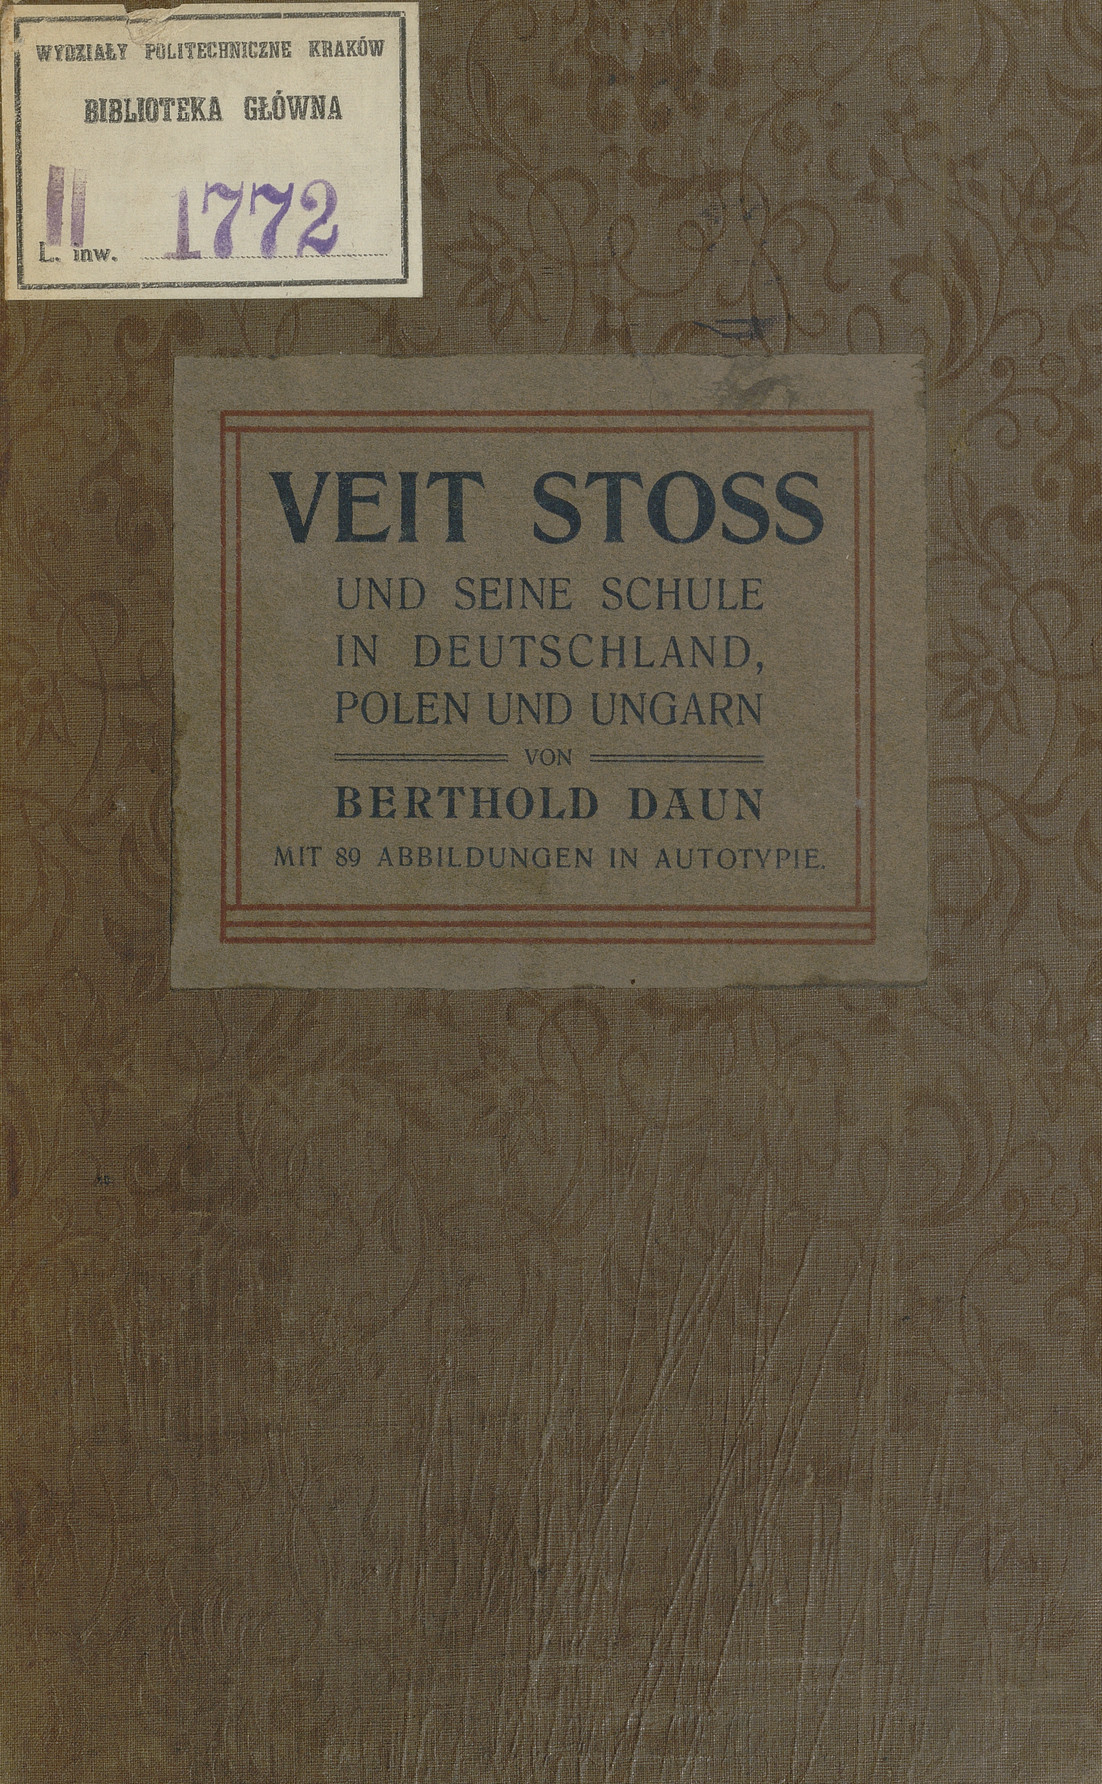 Veit Stoss und seine schule in Deutschland, Polen, Ungarn